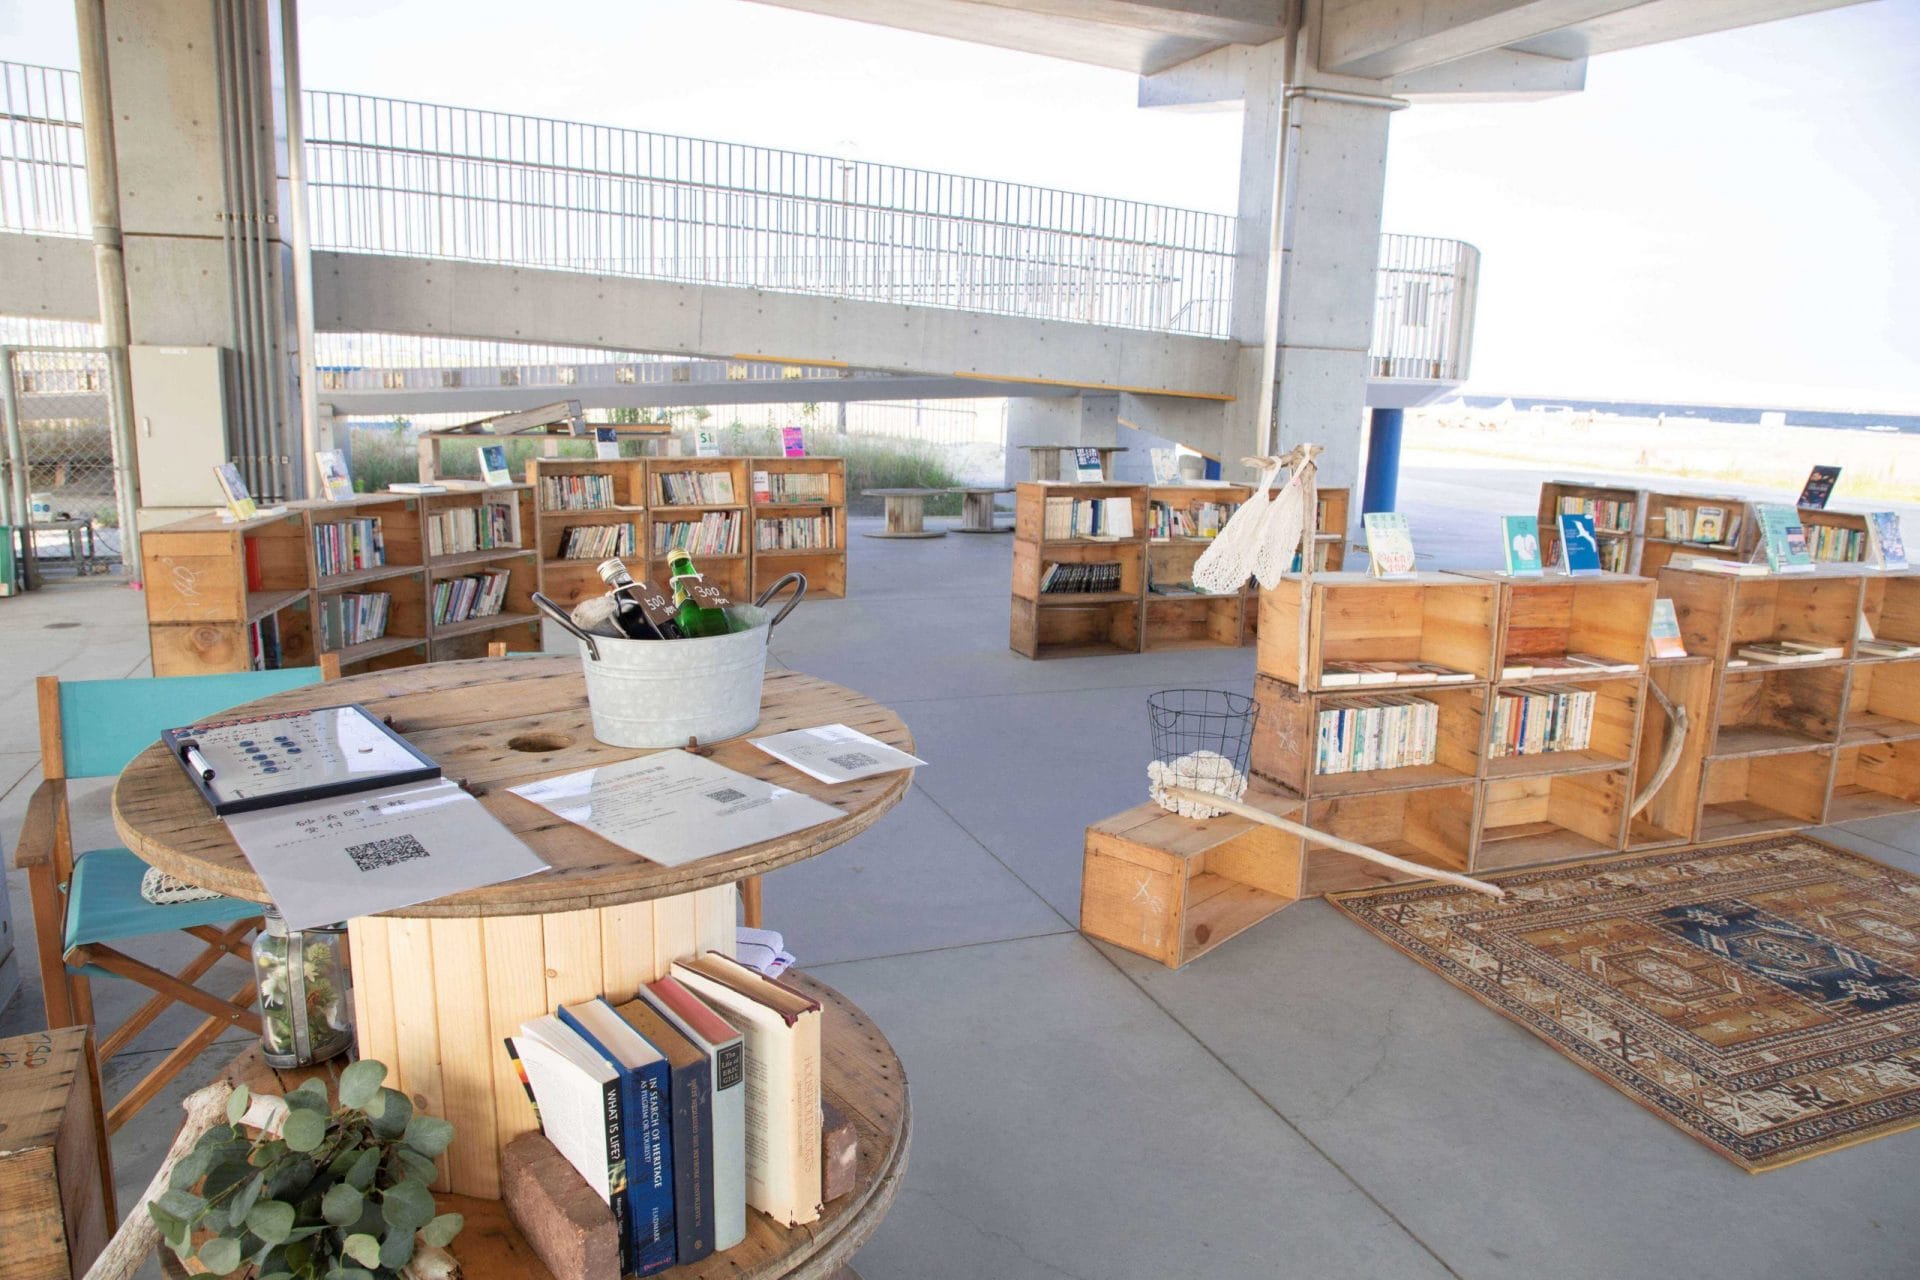 砂浜図書館